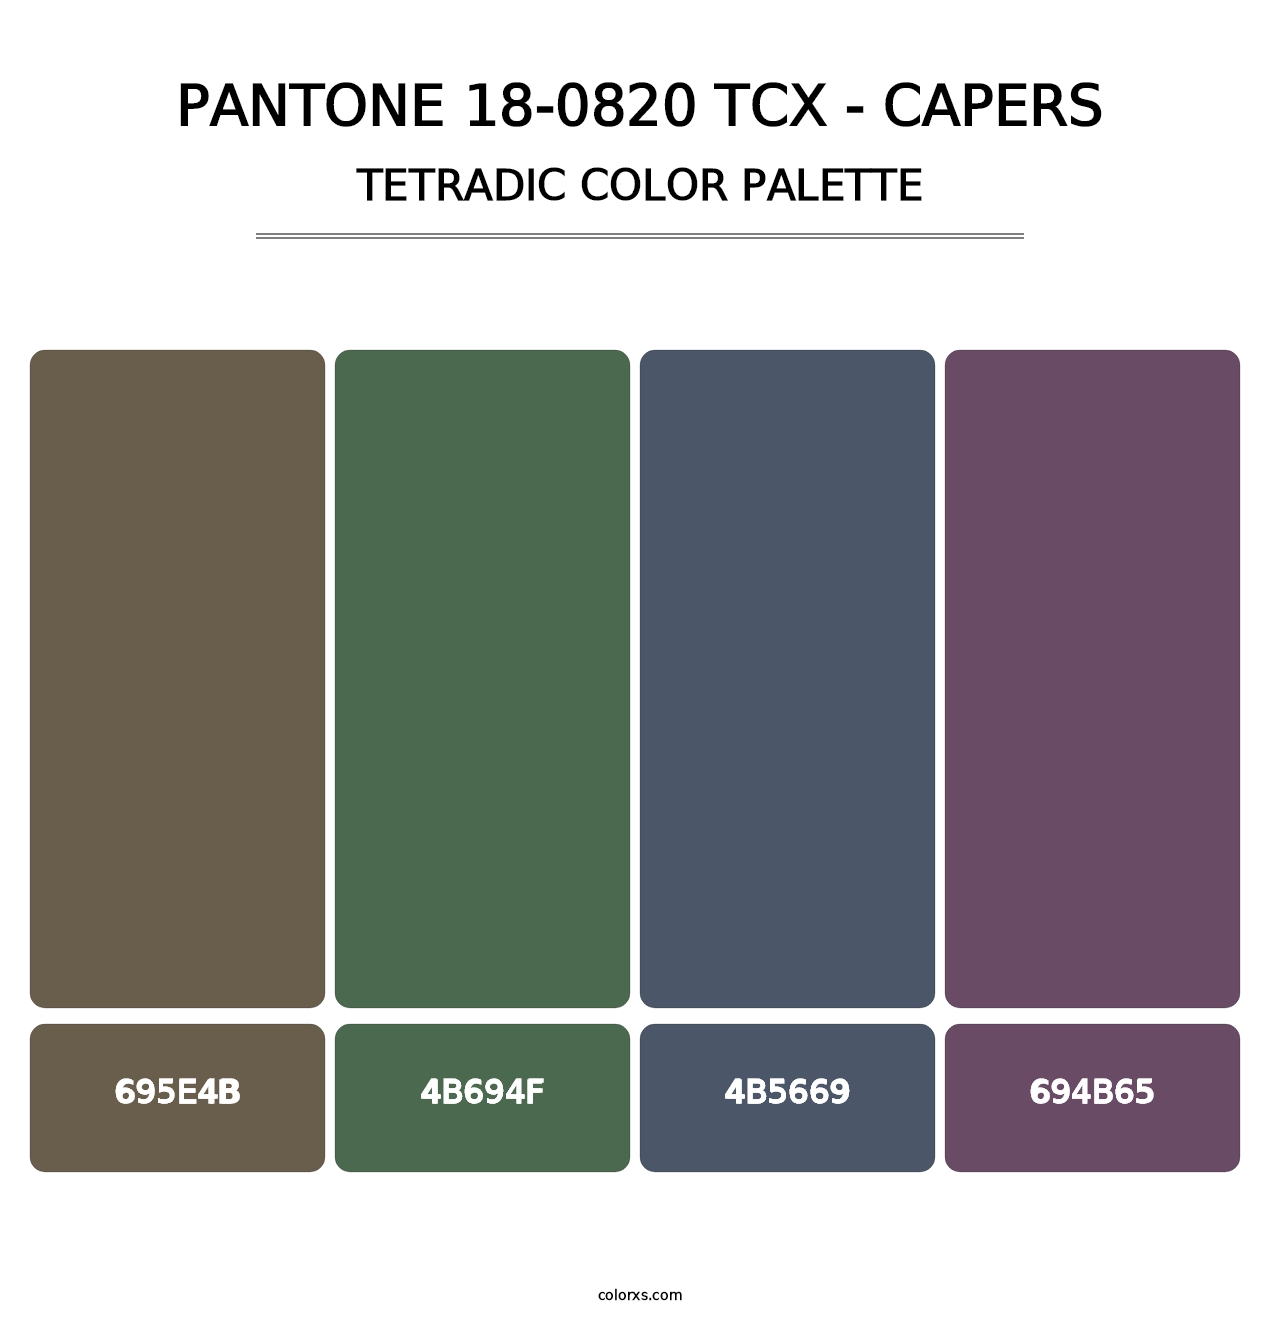 PANTONE 18-0820 TCX - Capers - Tetradic Color Palette